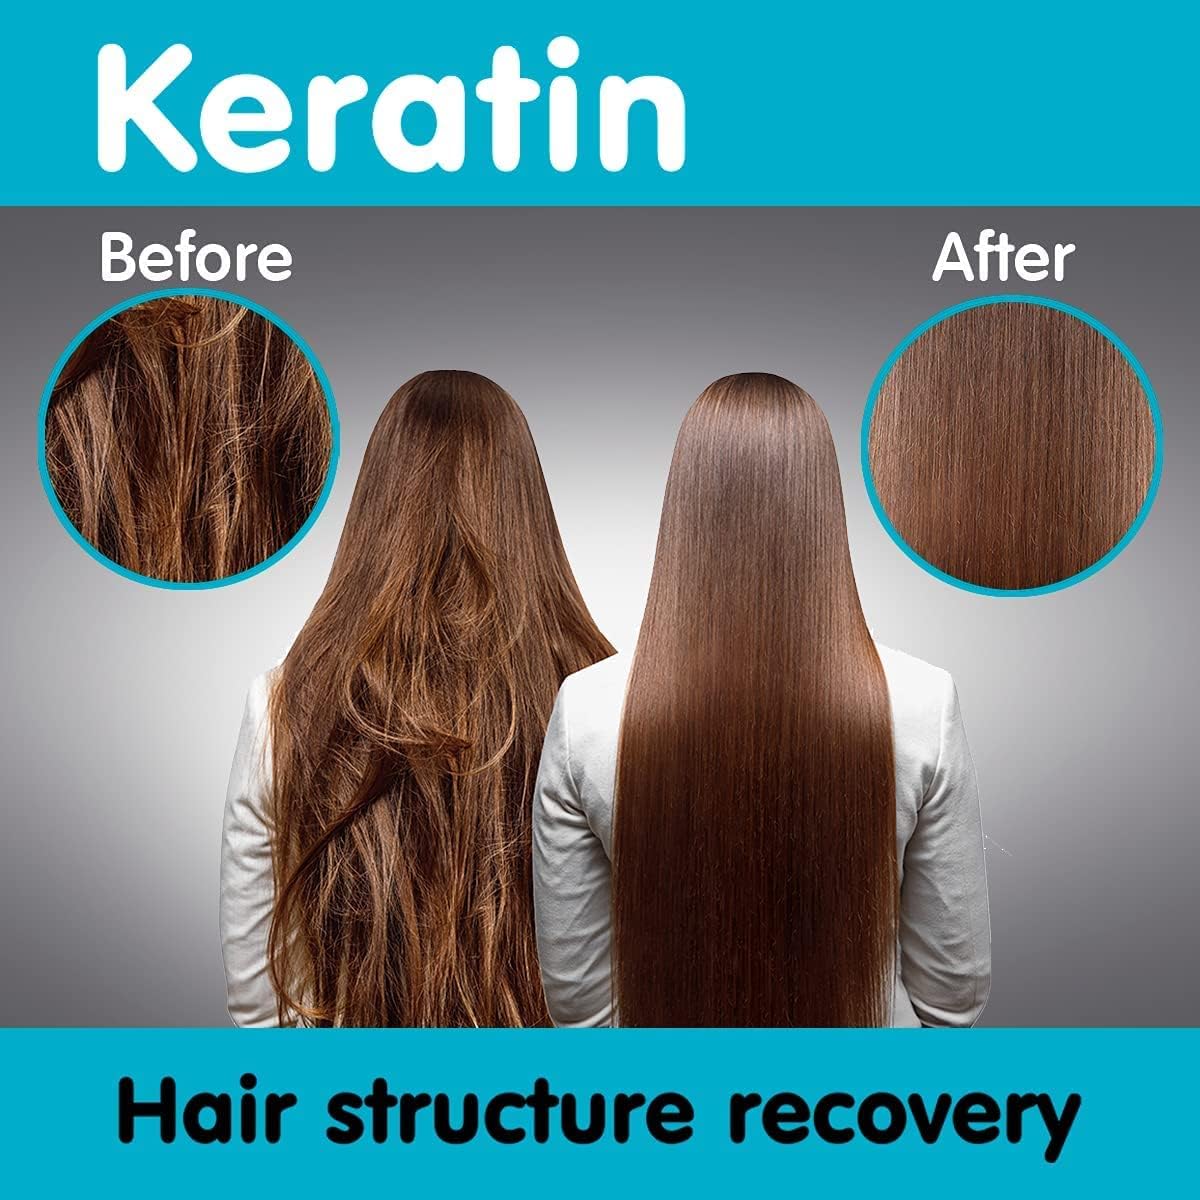 Serum Keratin for Dull & Brittle Hair 50ml